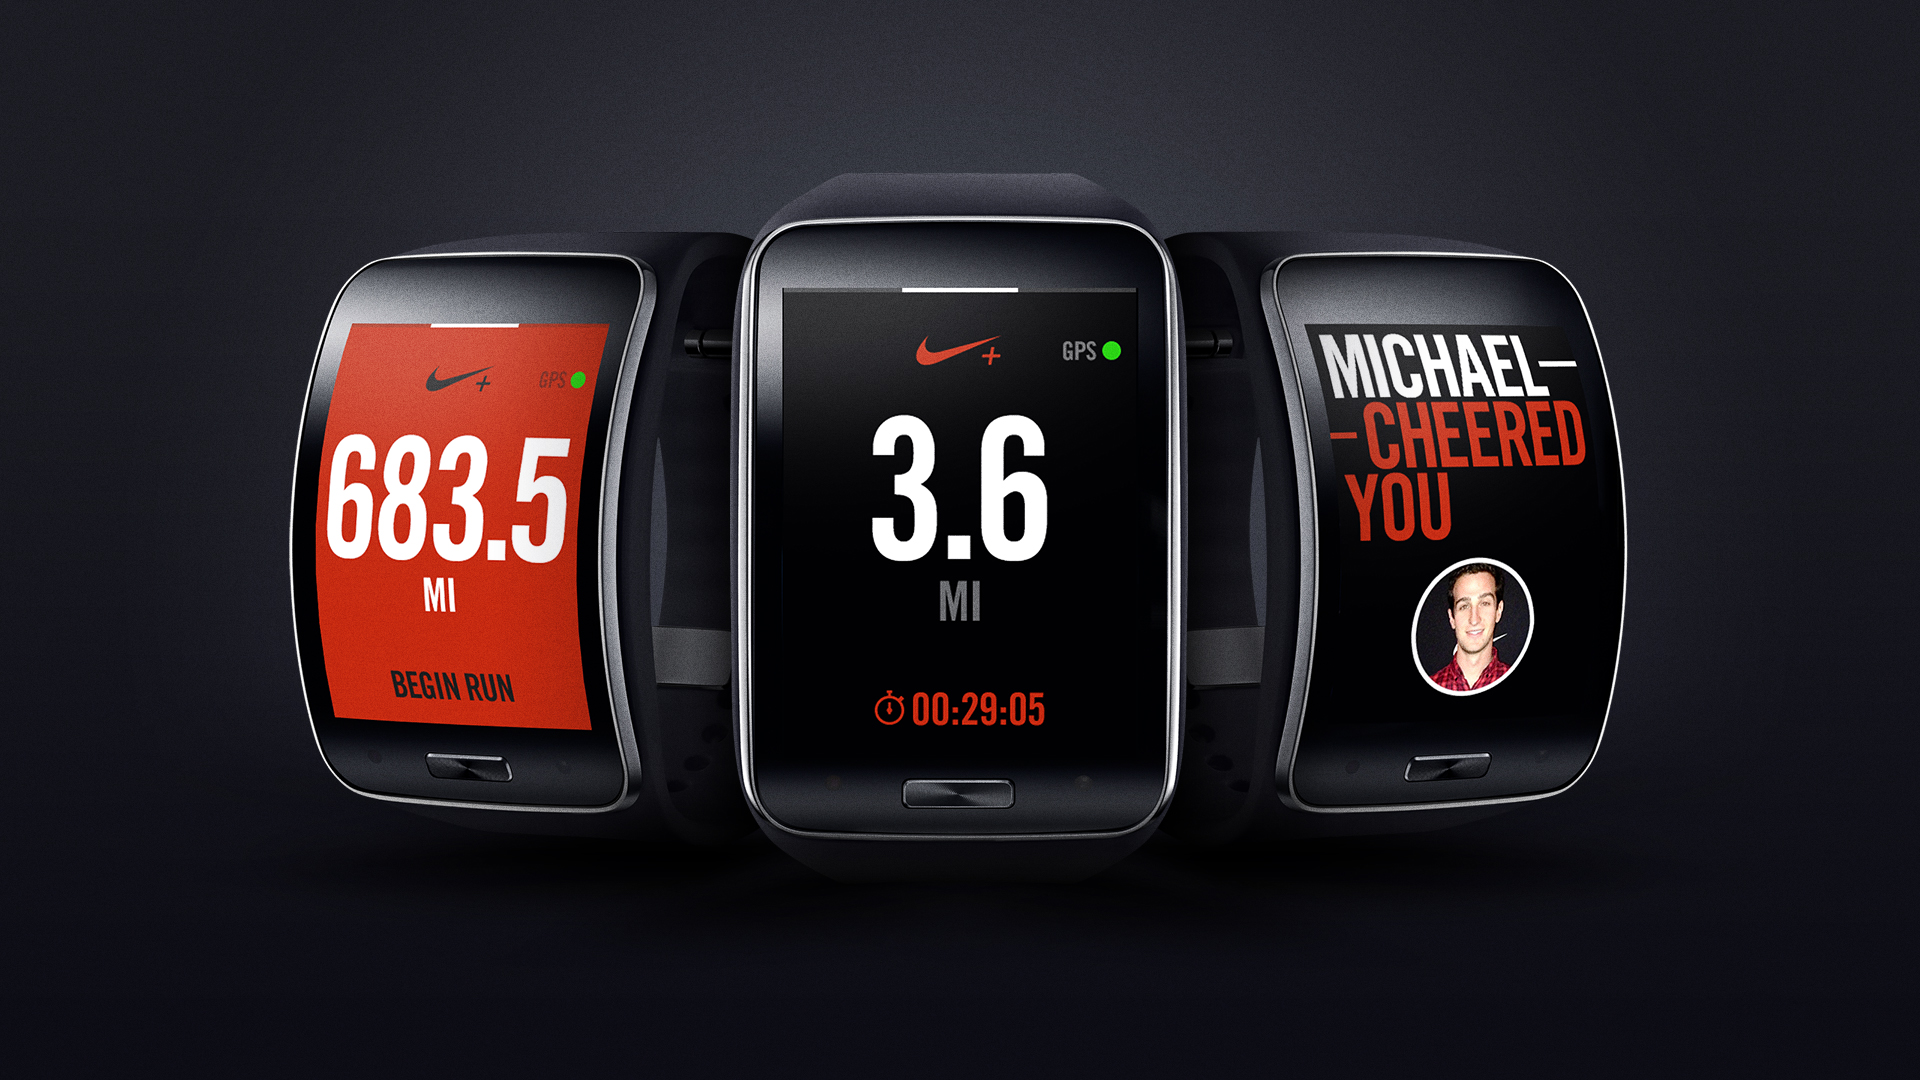 Samsung Gear S und Nike stellen Nike+ Running-App für Smartwatch Gear S vor